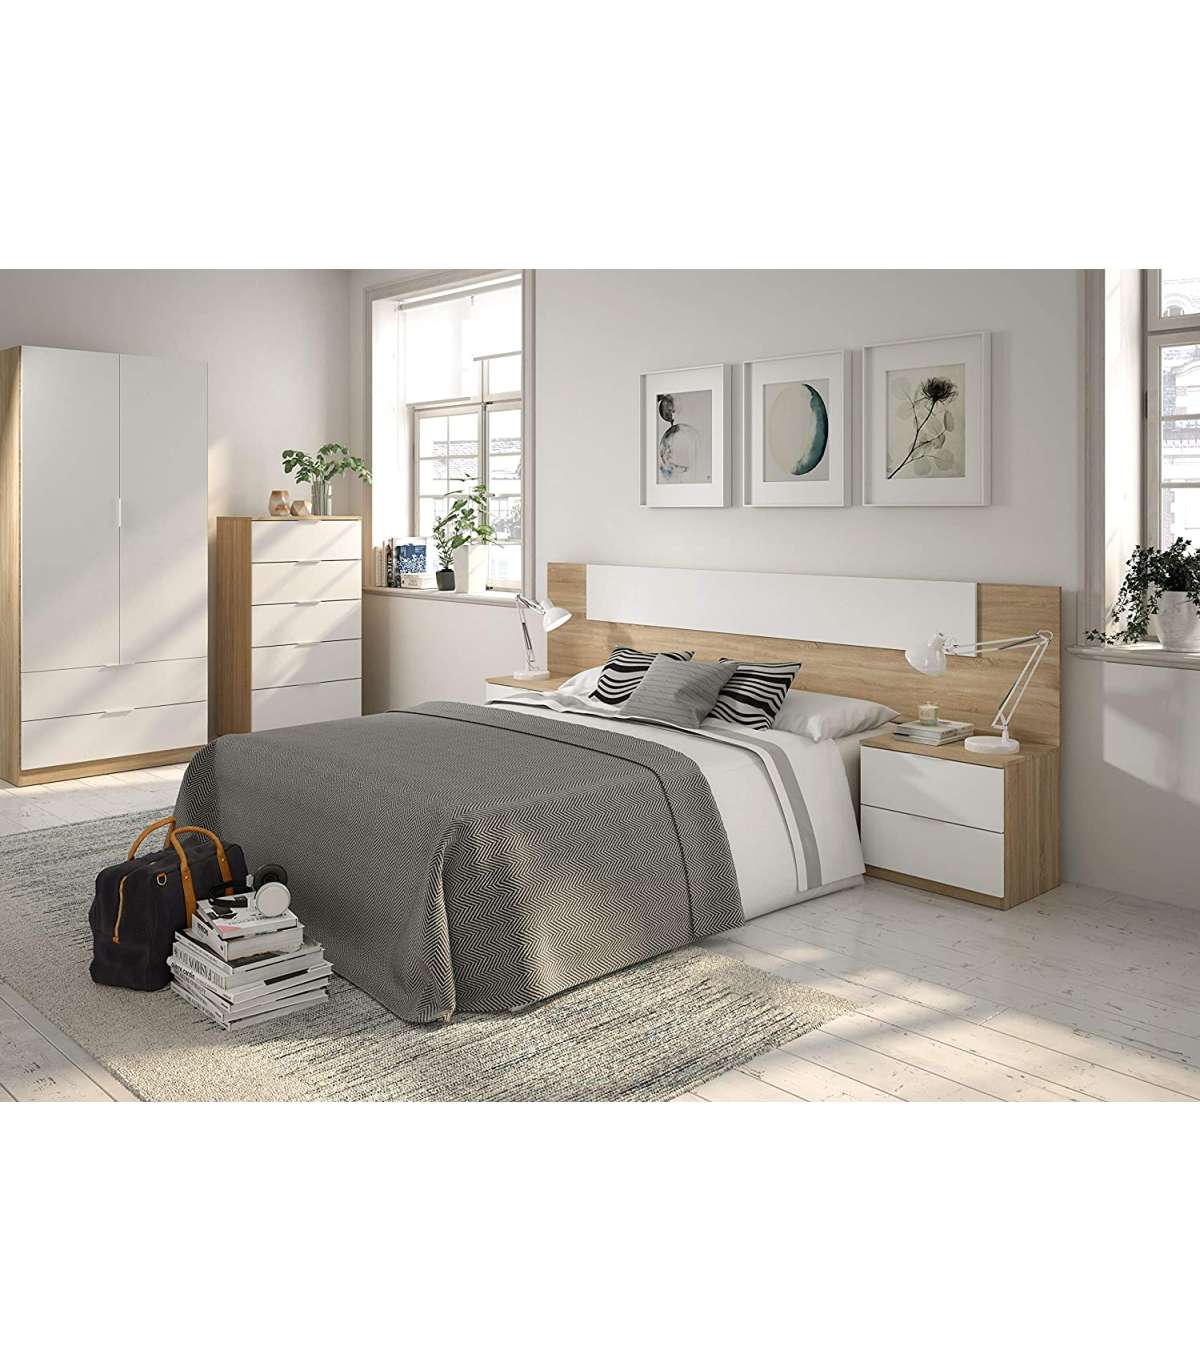 Armario ropero dormitorio pequeño con dos cajones melanina